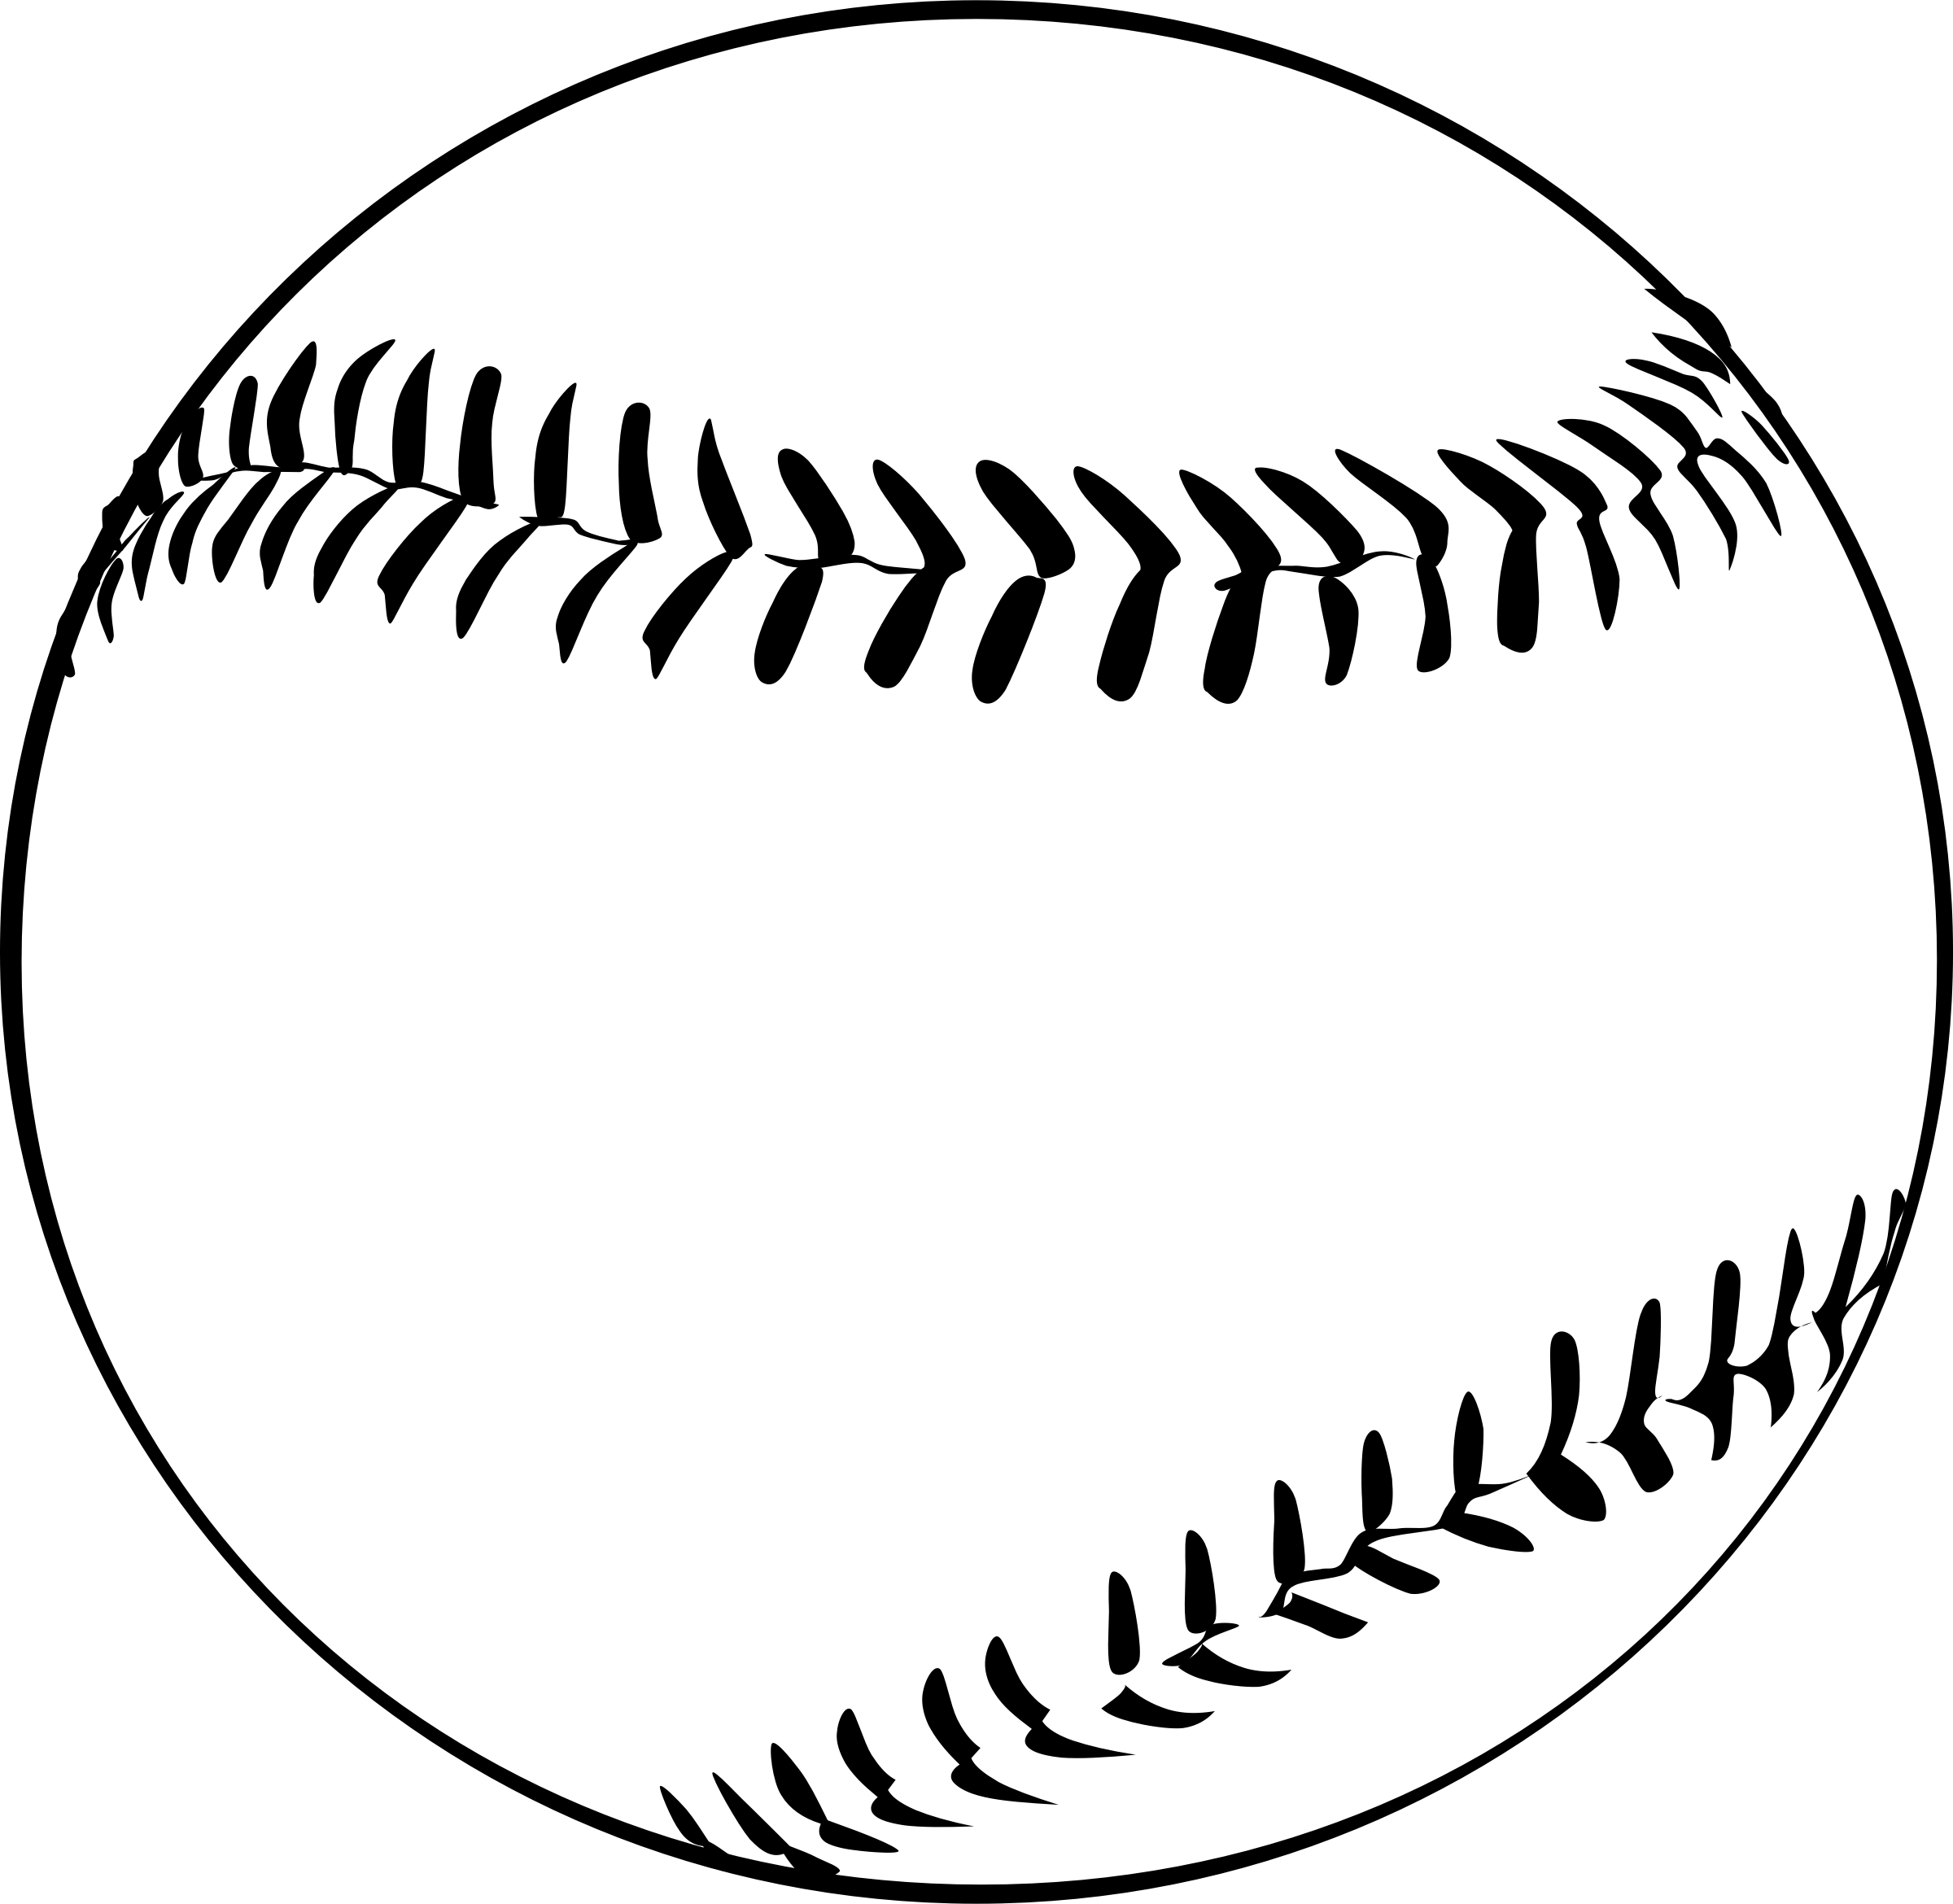 clipart baseball outline